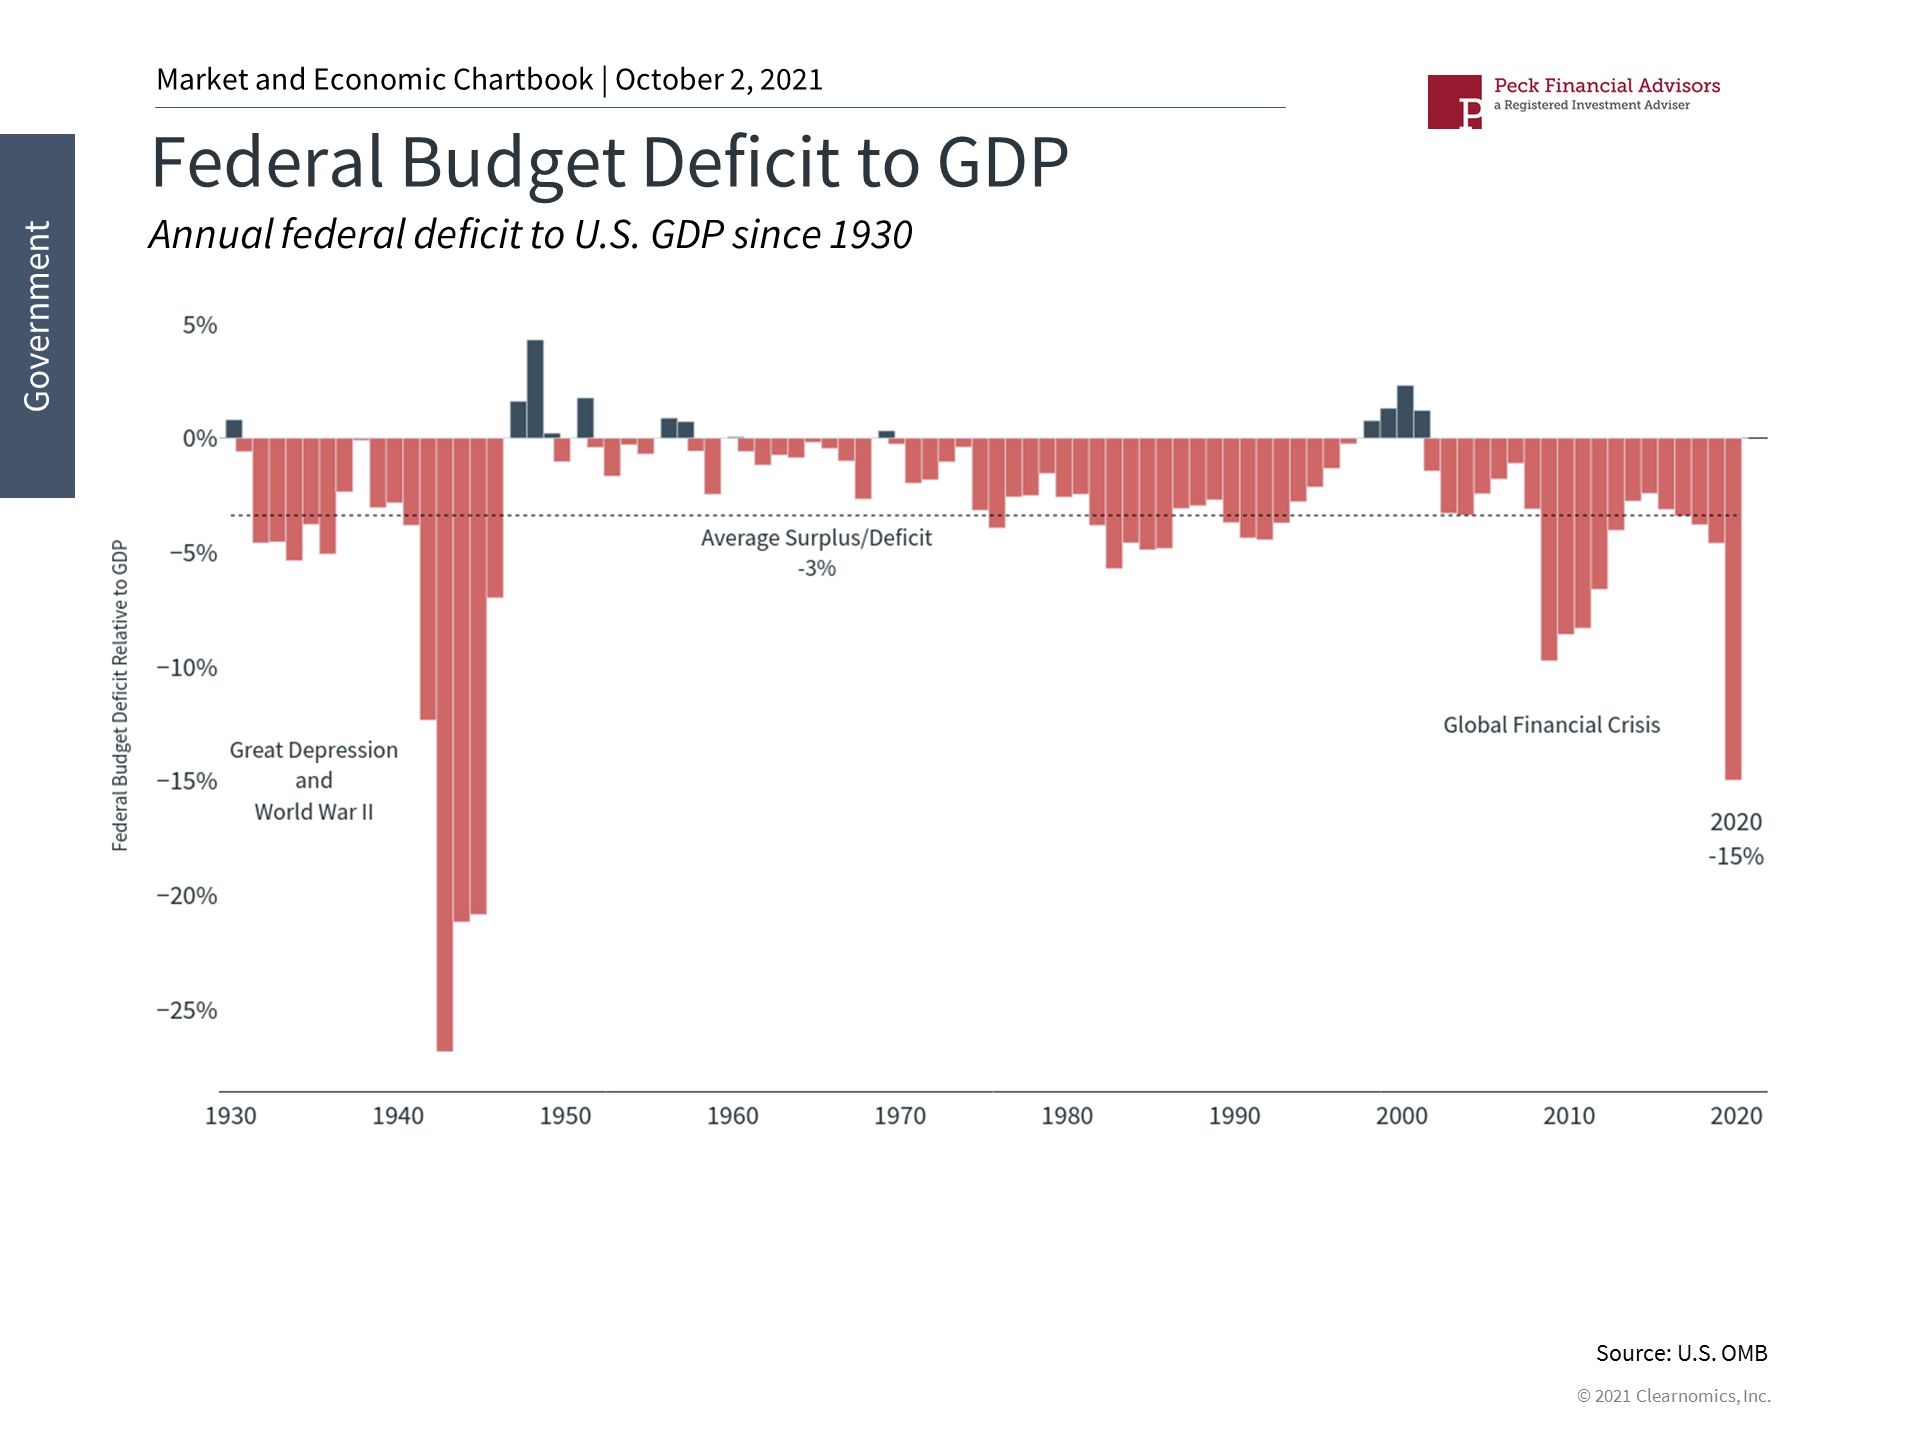 Federal Budget Defecit 10_2_21.jpg